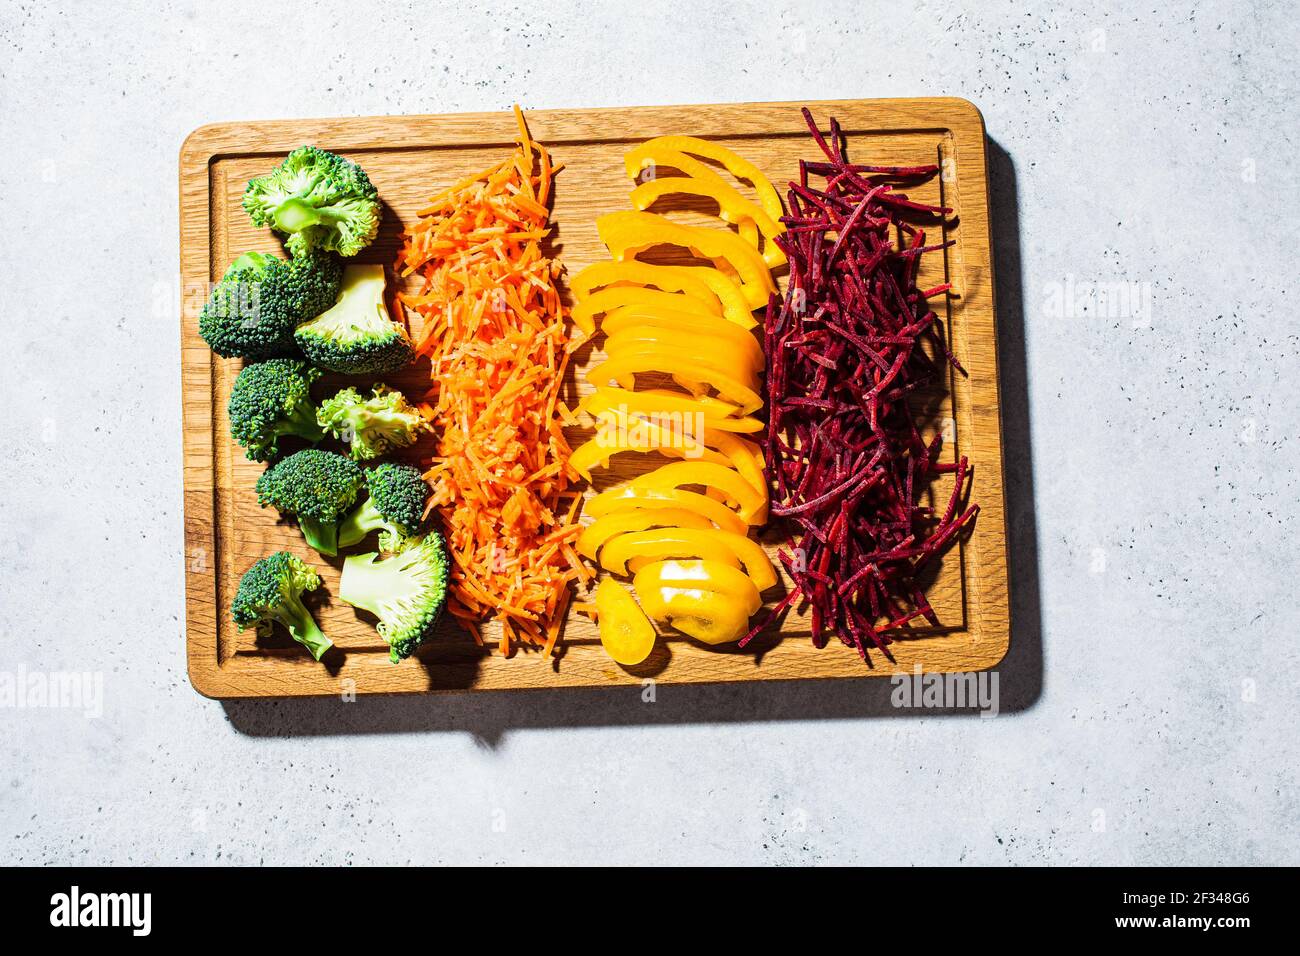 Tranches de légumes crus sur une planche de bois. Brocoli brut, poivrons, carottes et betteraves, vue du dessus. Cuisine saine concept. Banque D'Images